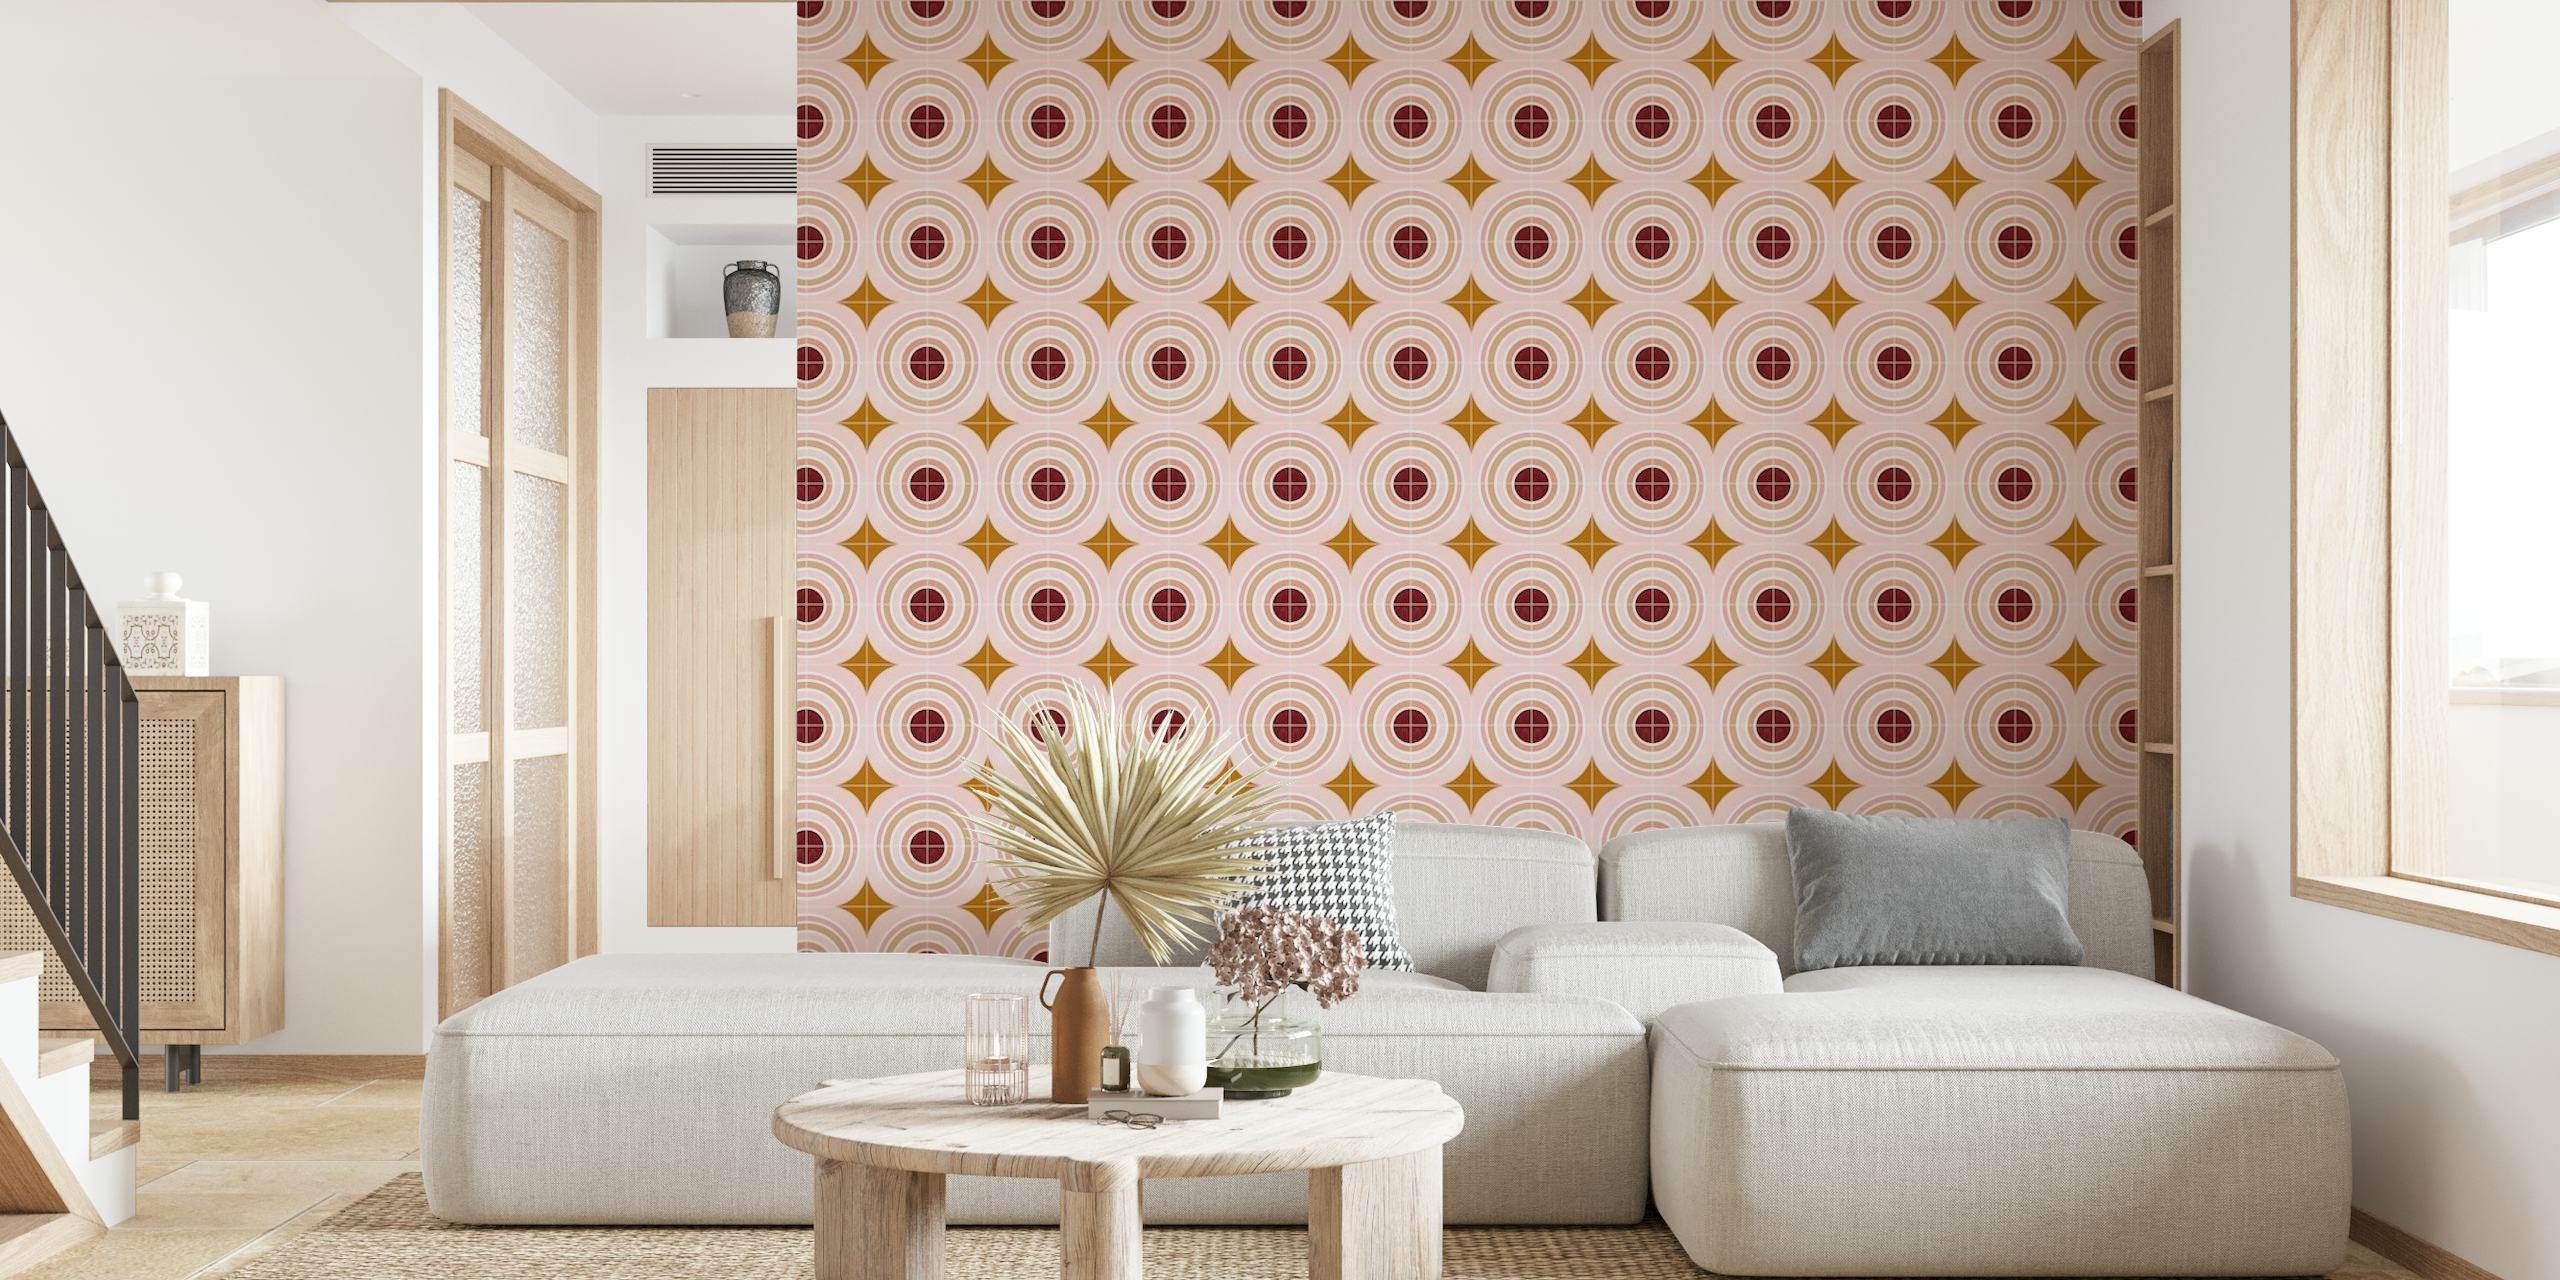 Carta da parati Target Tiles con motivi a cerchi concentrici in tenui tonalità rosa e oro